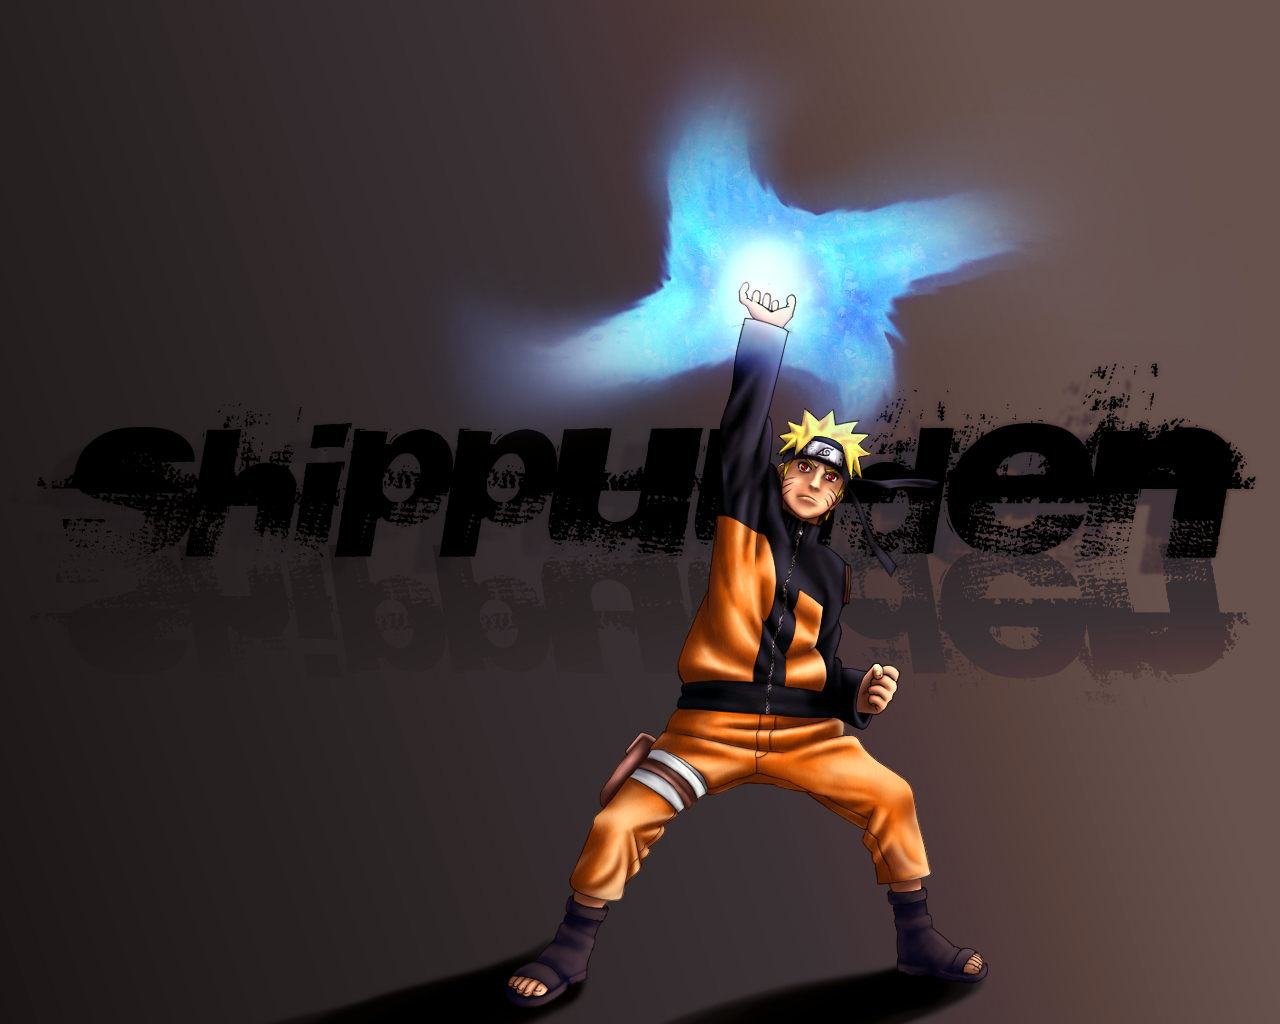 Naruto Shippuden 1: A Morte de Naruto! - 4 de Agosto de 2007